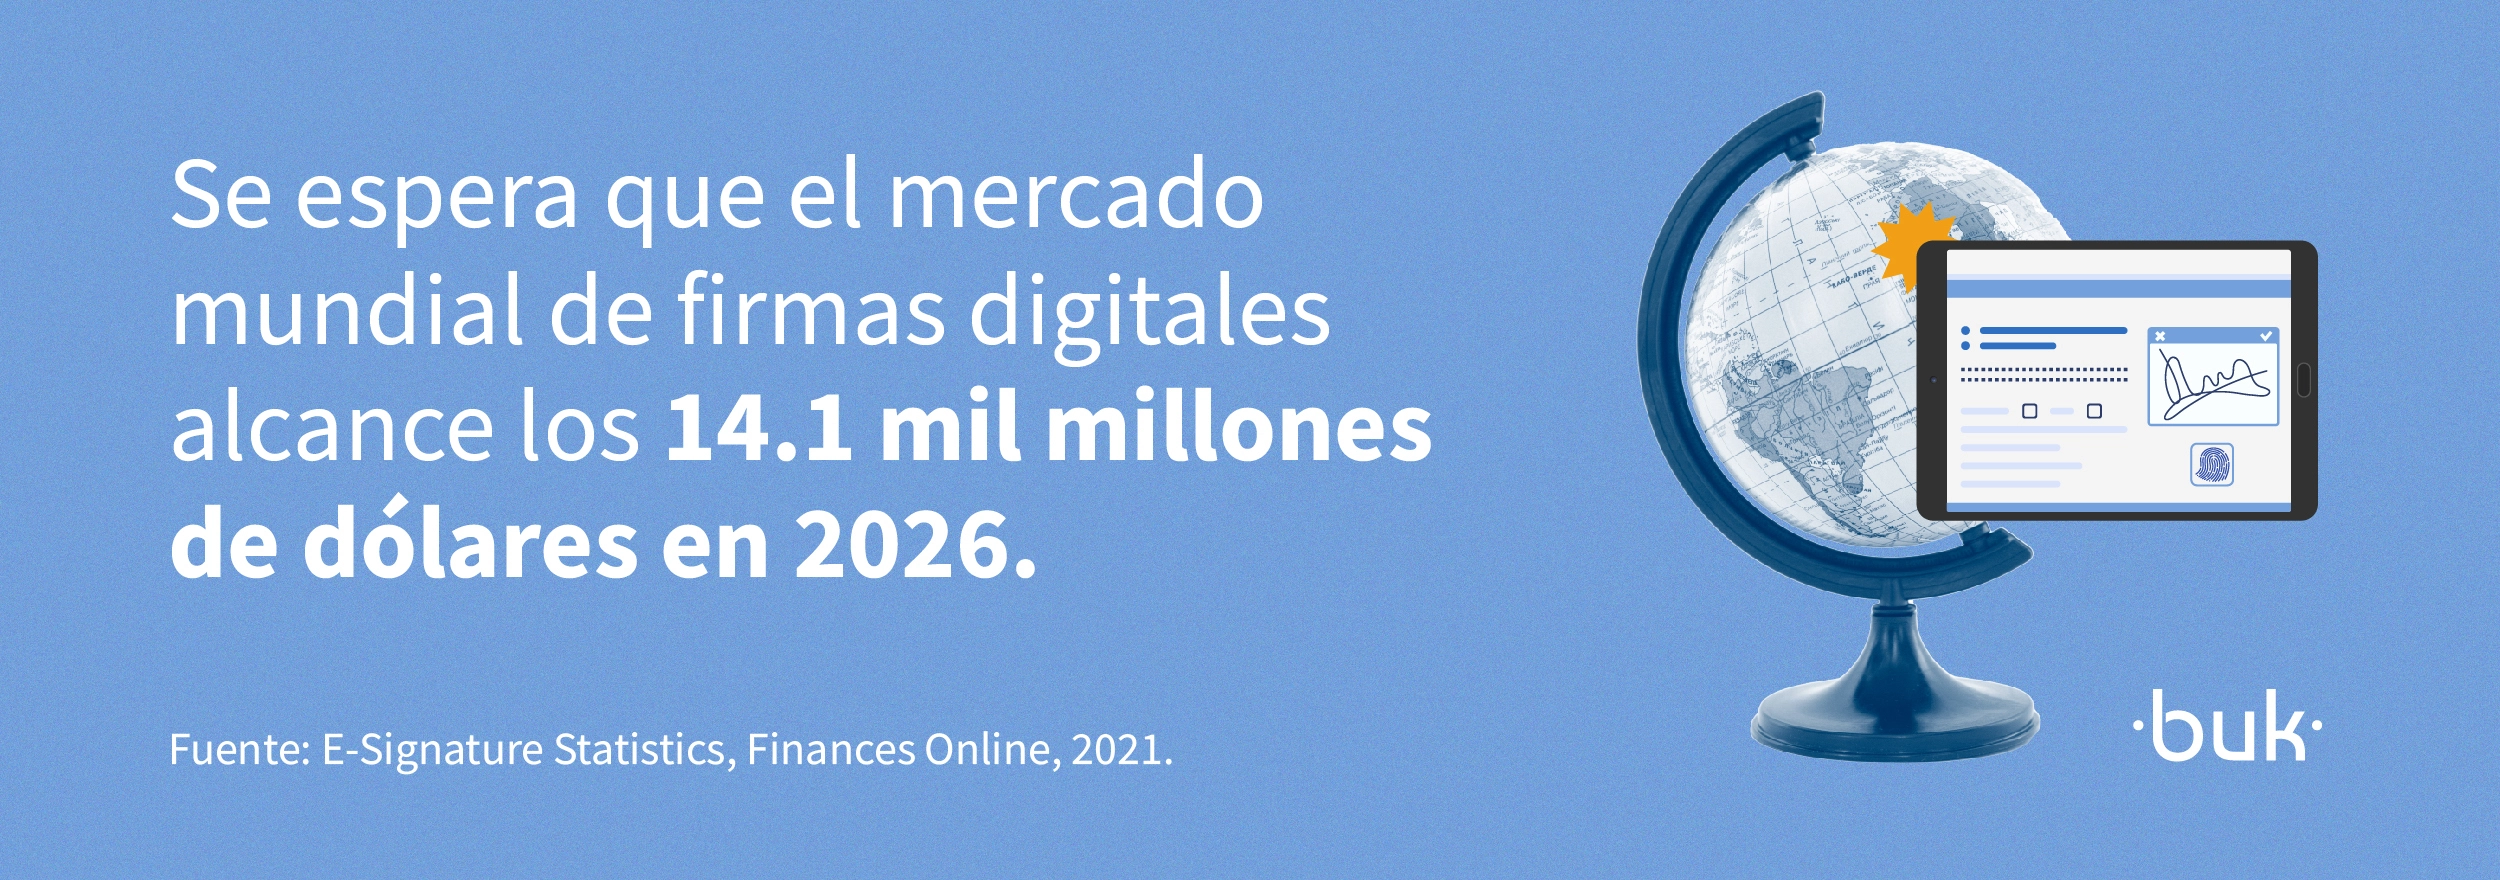 se espera que el mercado mundial de firmas digitales alcance los 14 millones de dolares en 2026